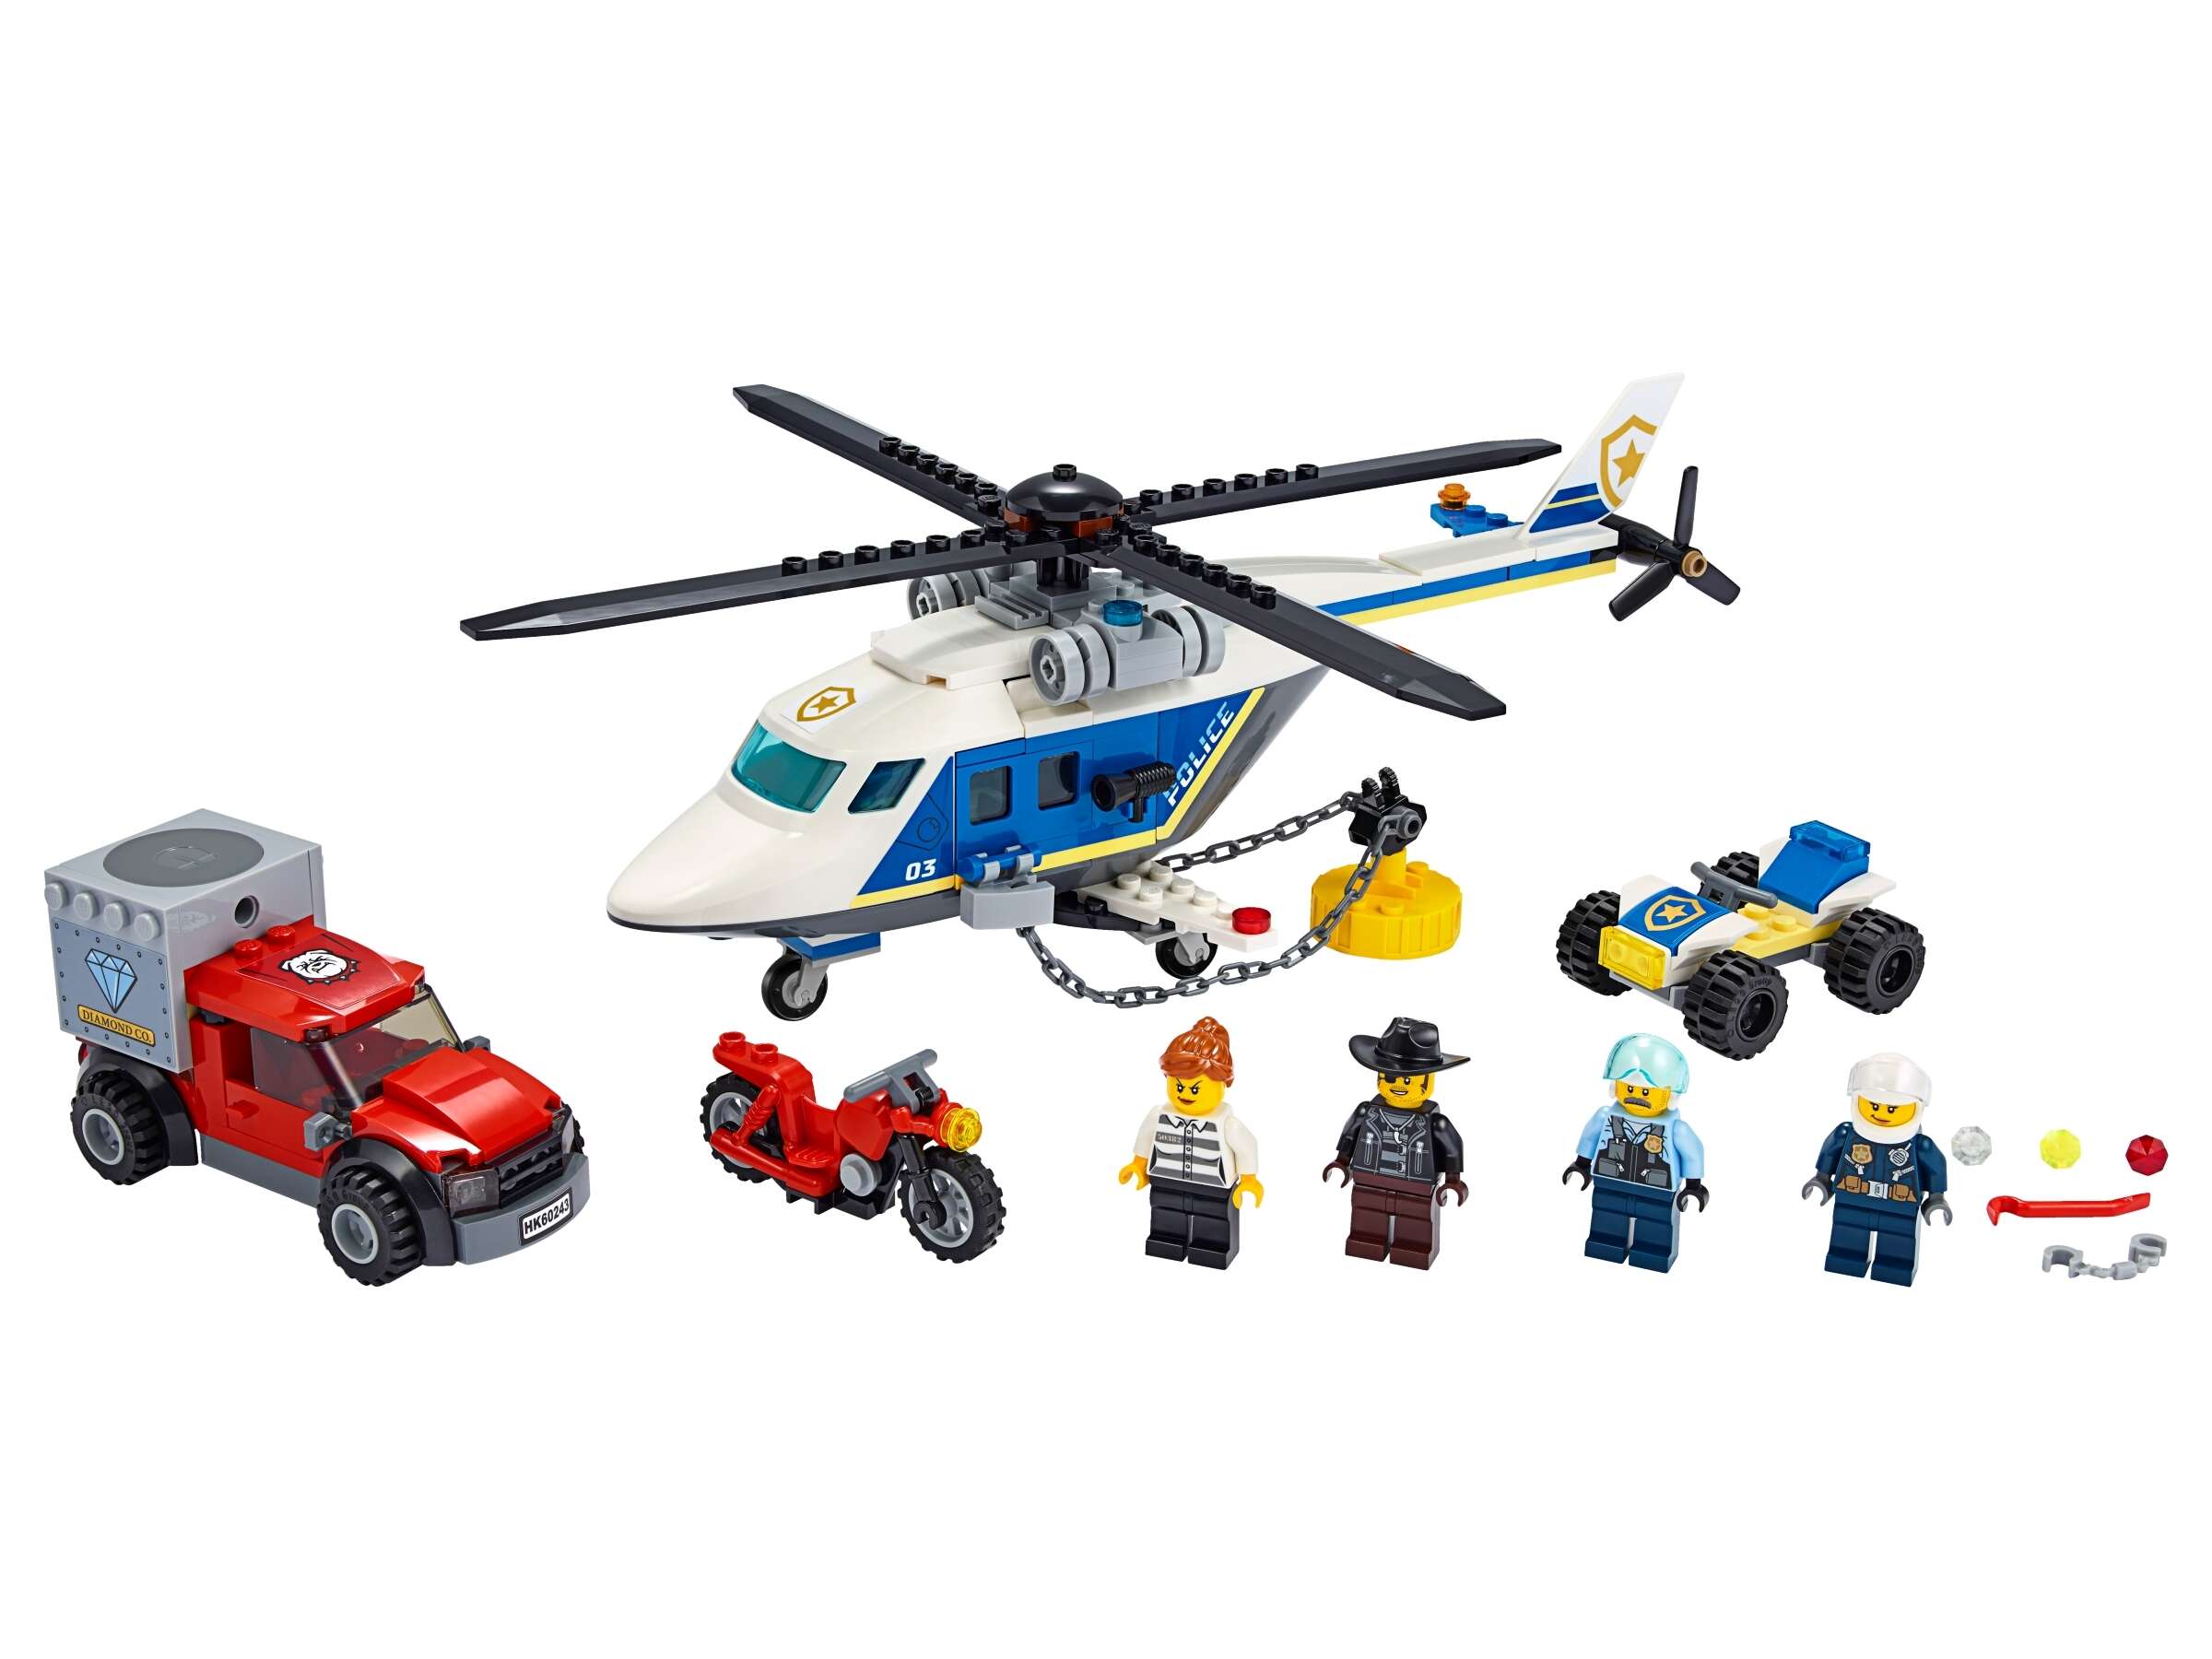 LEGO 60243 City Verfolgungsjagd mit dem Polizeihubschrauber, 4 Minifiguren